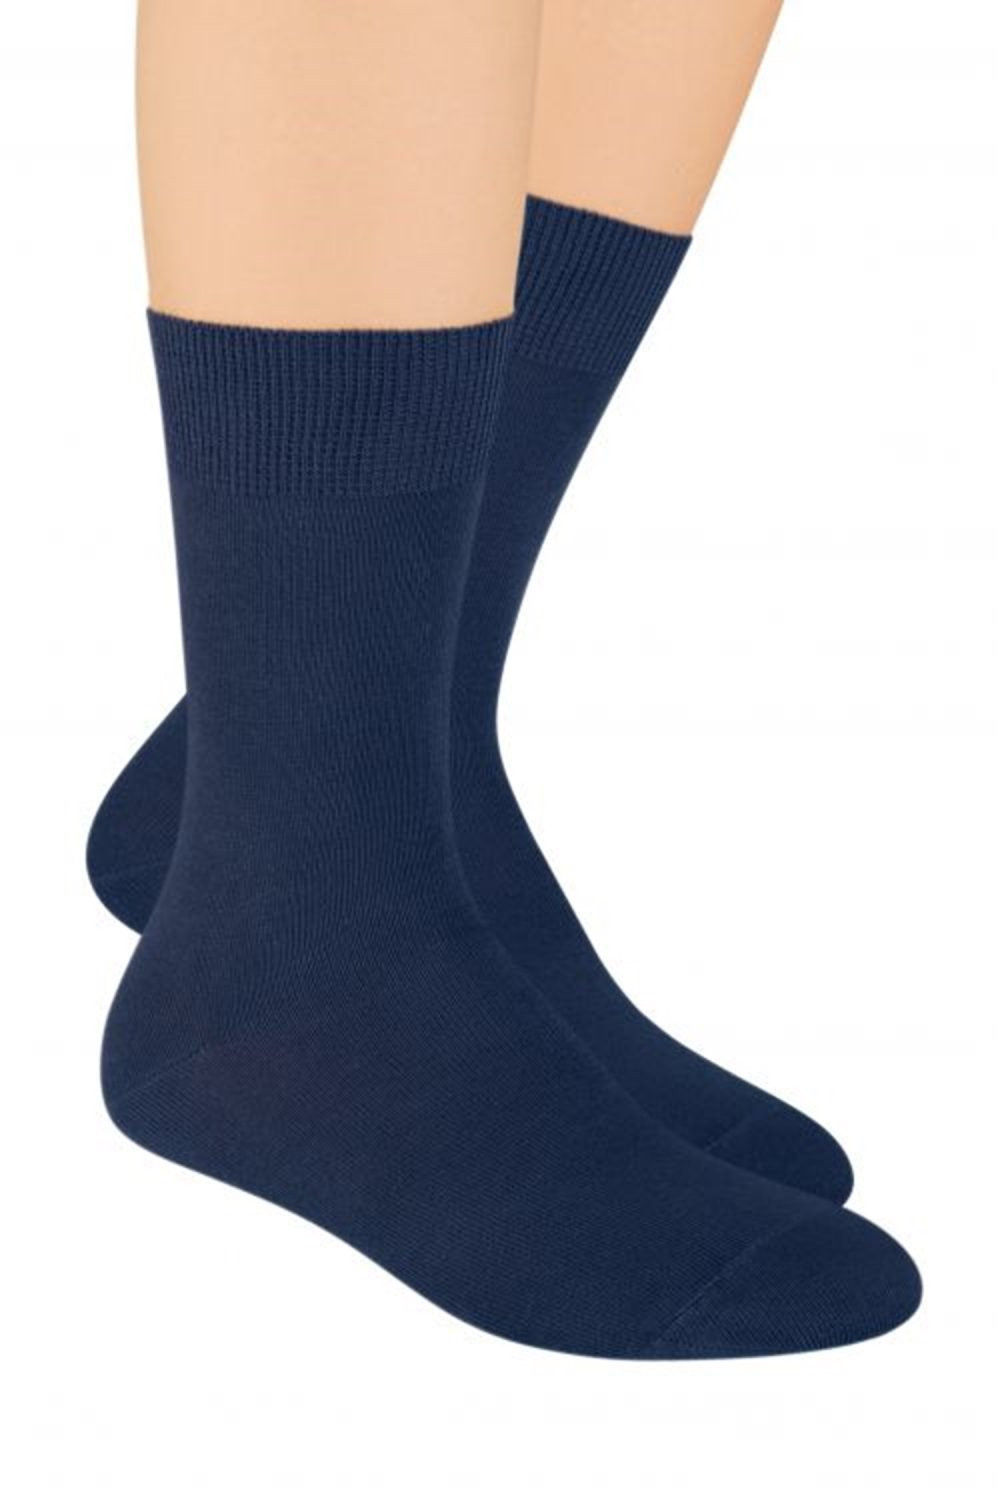 Pánské ponožky 048 tmavě modré - Steven 44-46 jeans